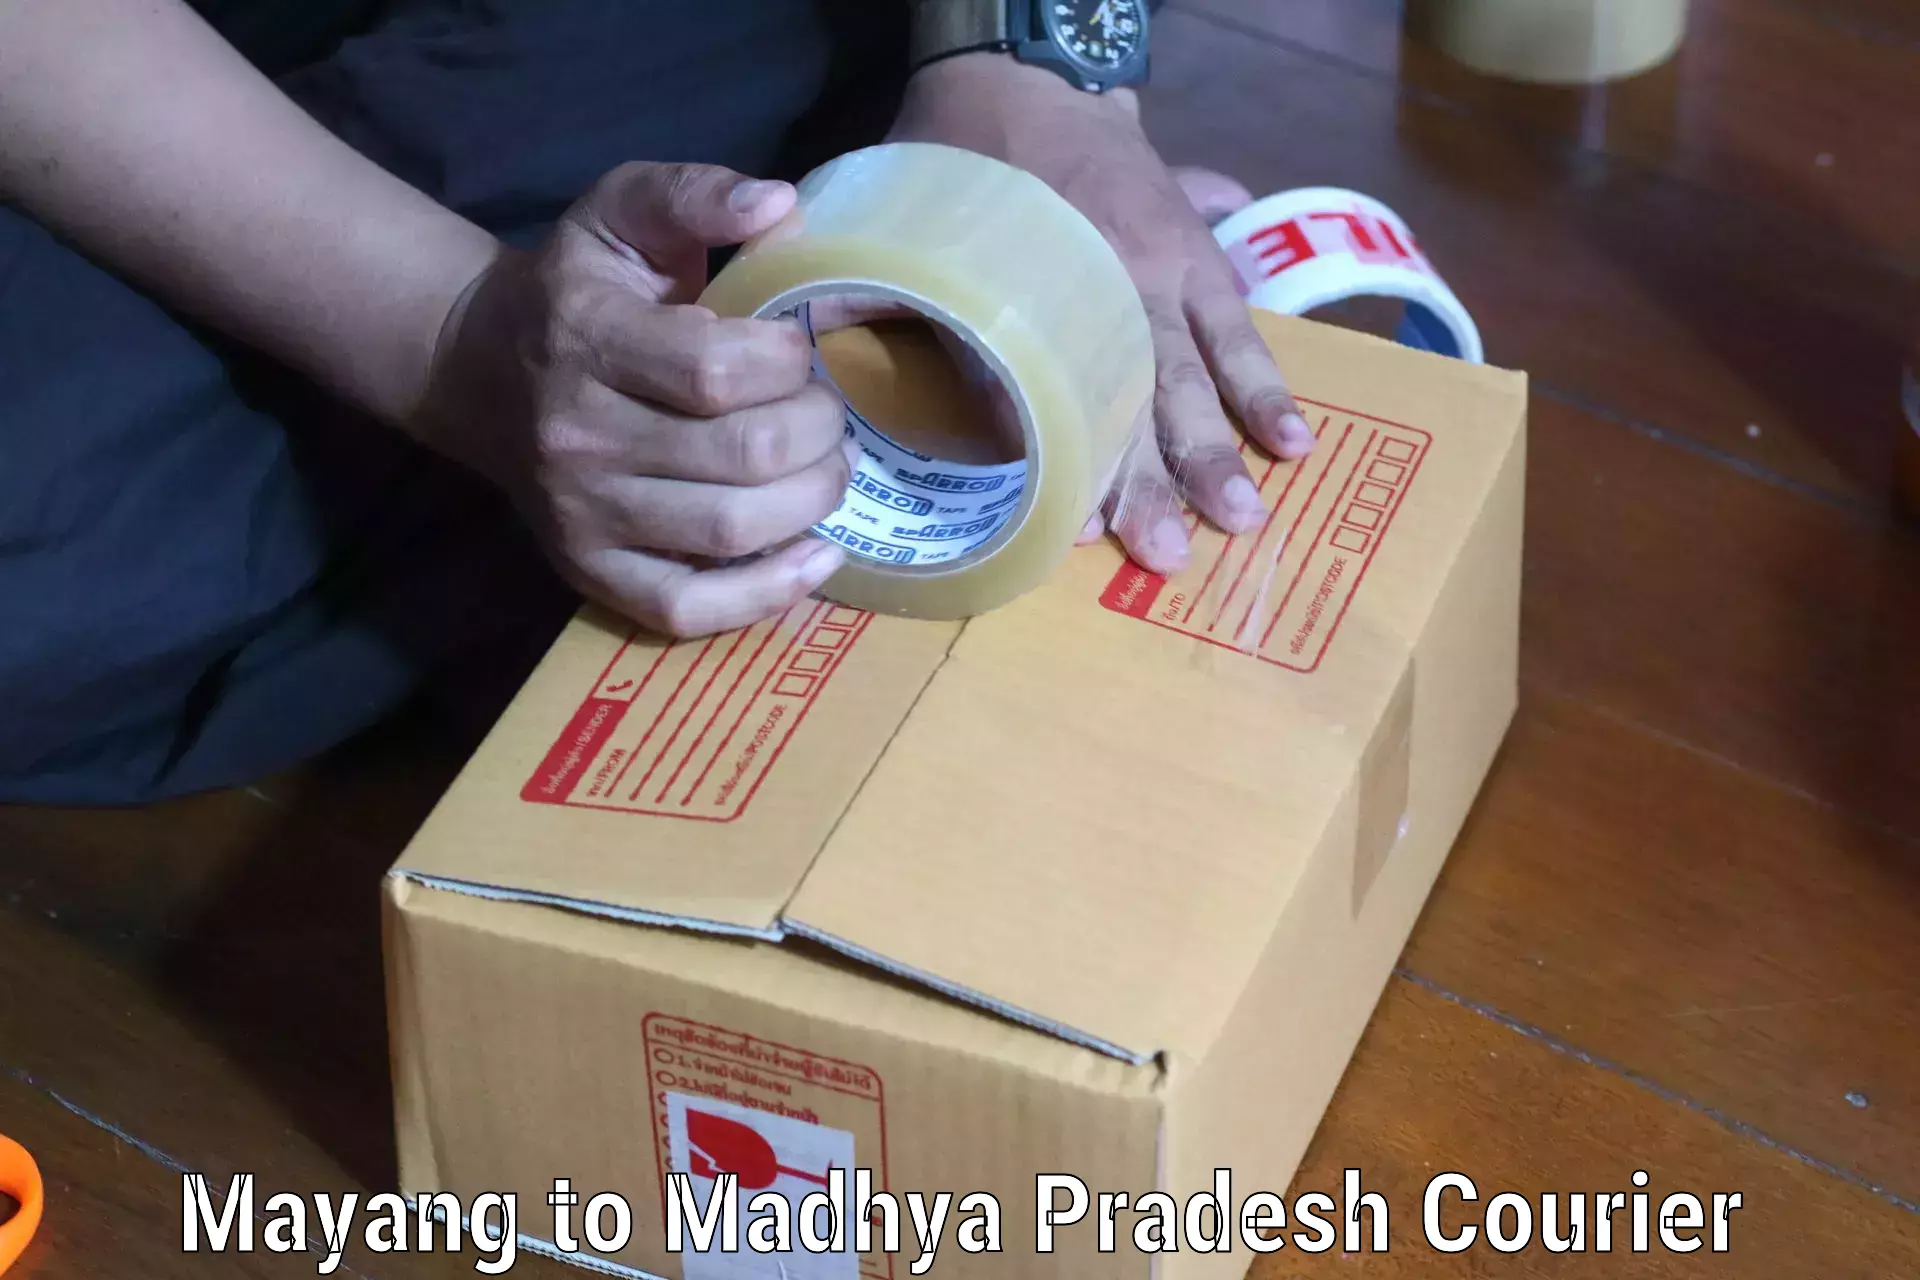 Business delivery service Mayang to Tarana Ujjain